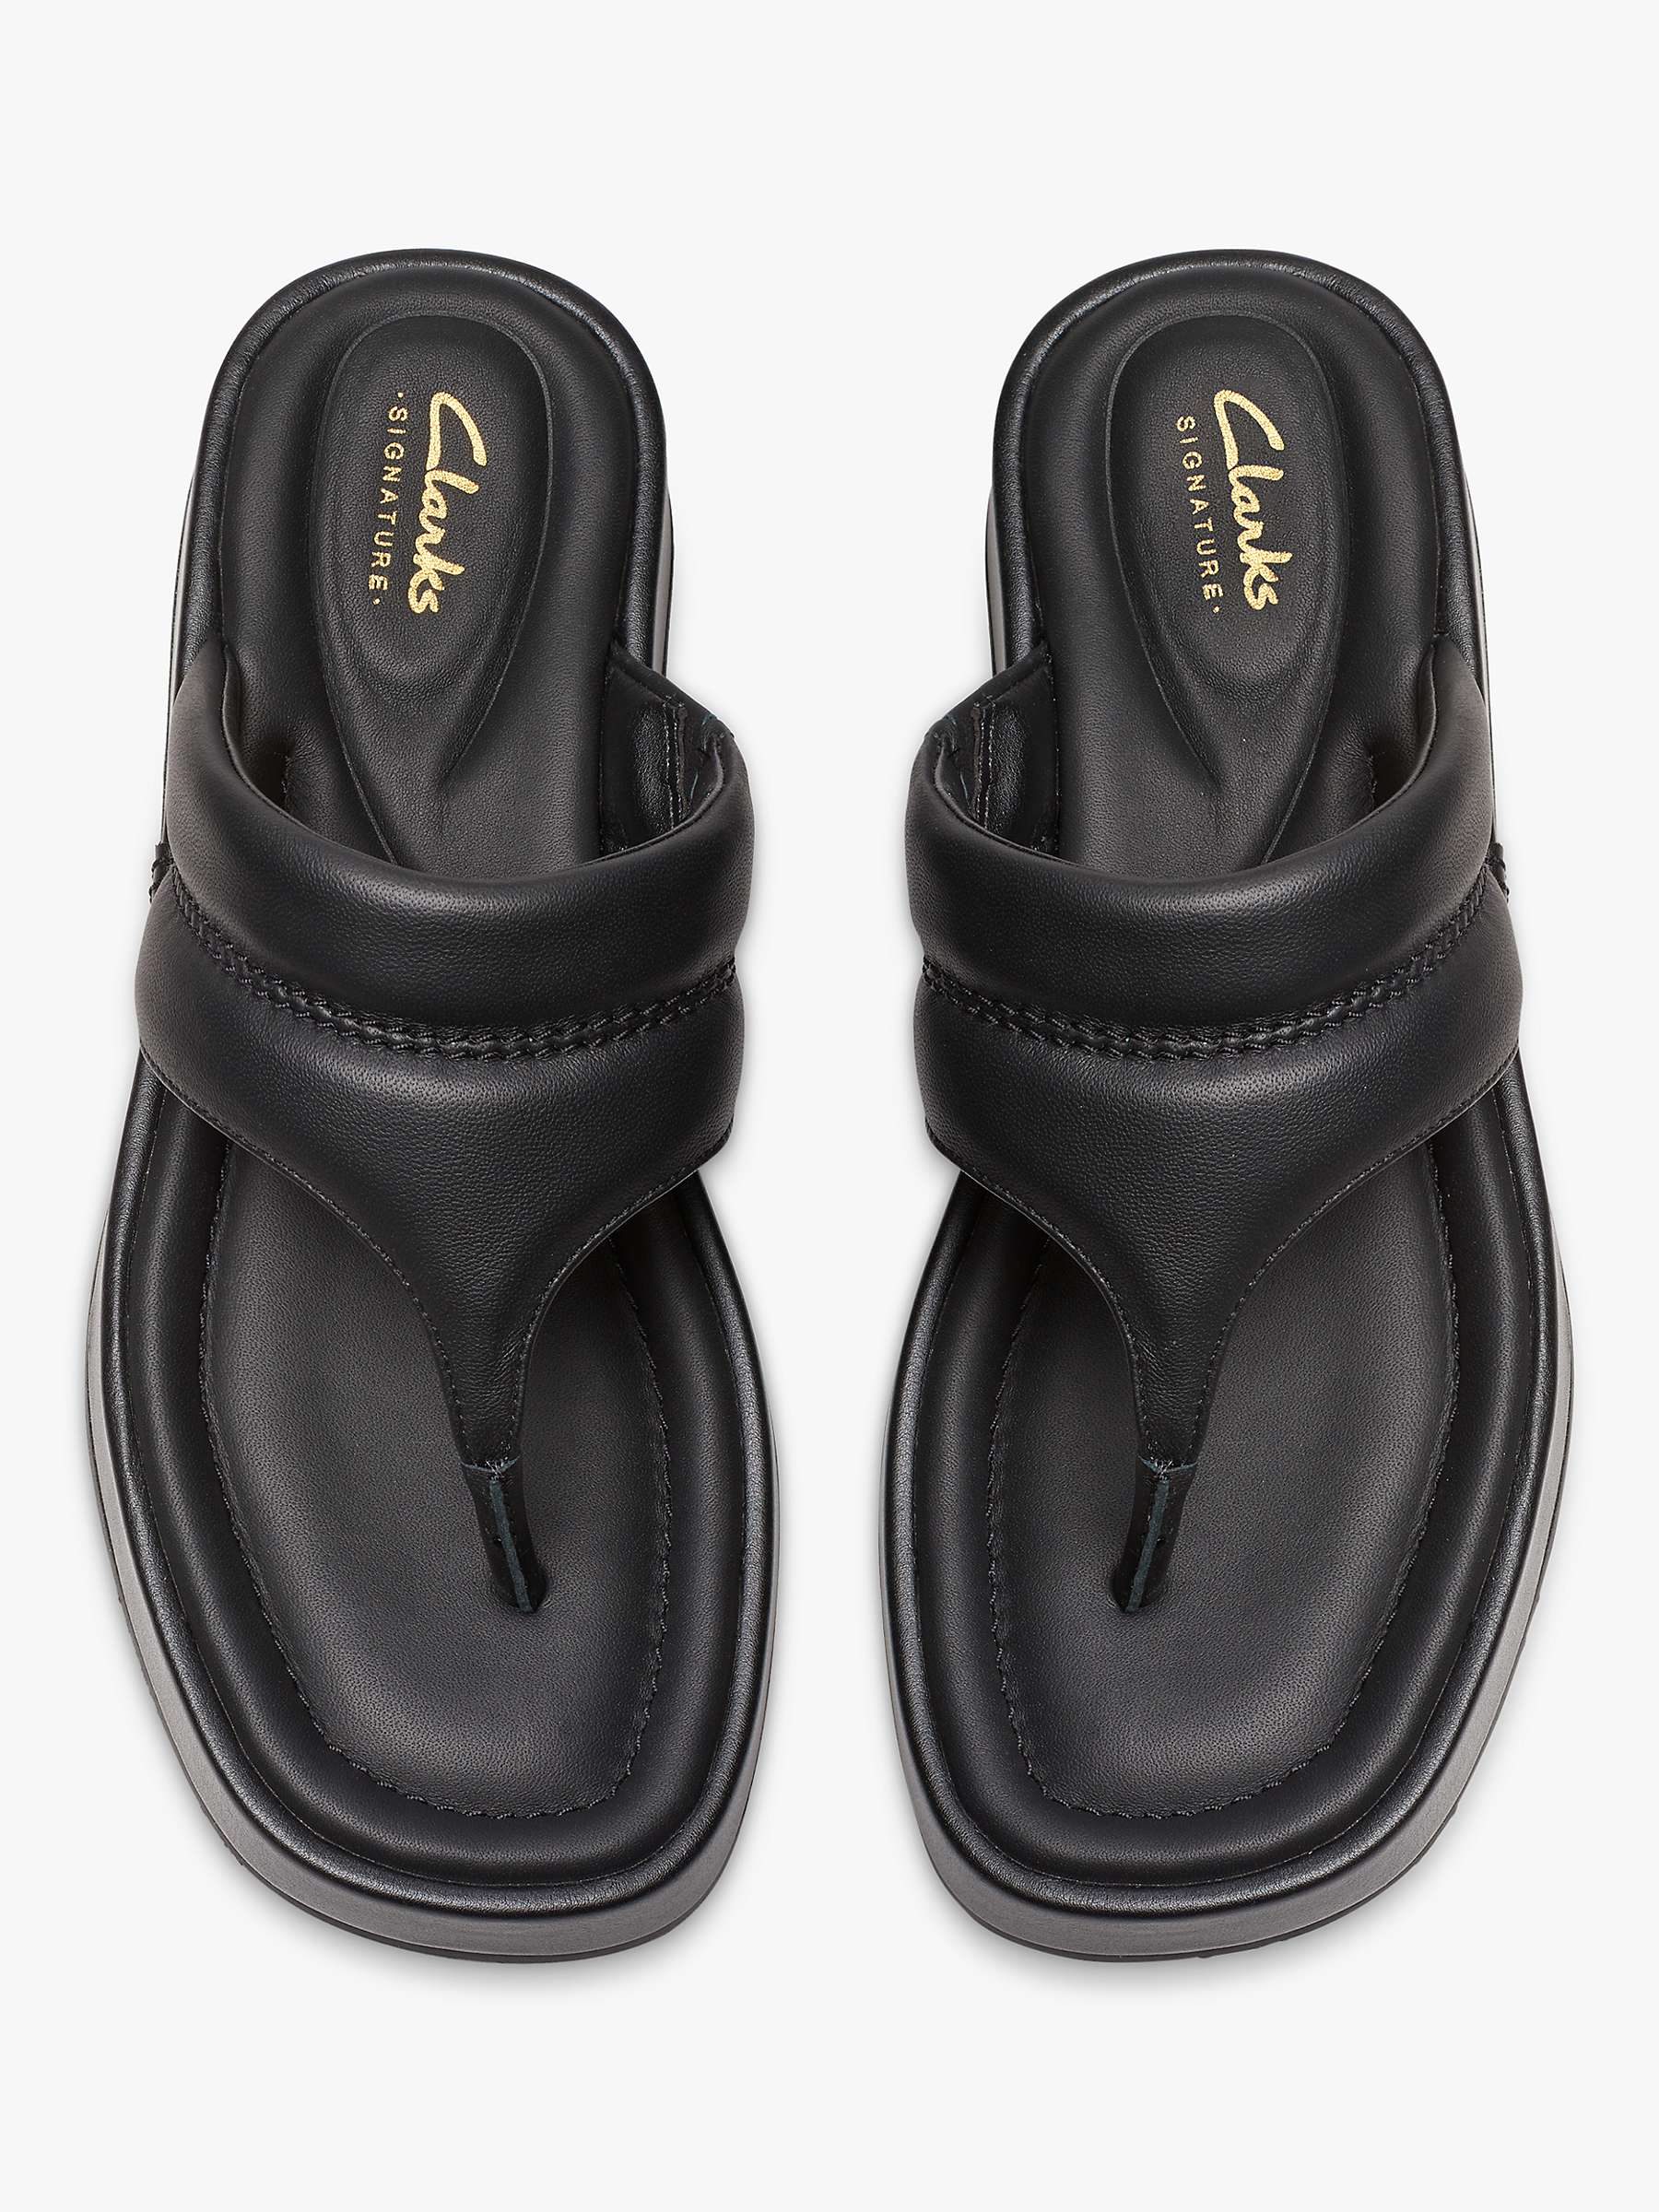 Buy Clarks Alda Walk Leather Toe Post Sandals, Black Online at johnlewis.com